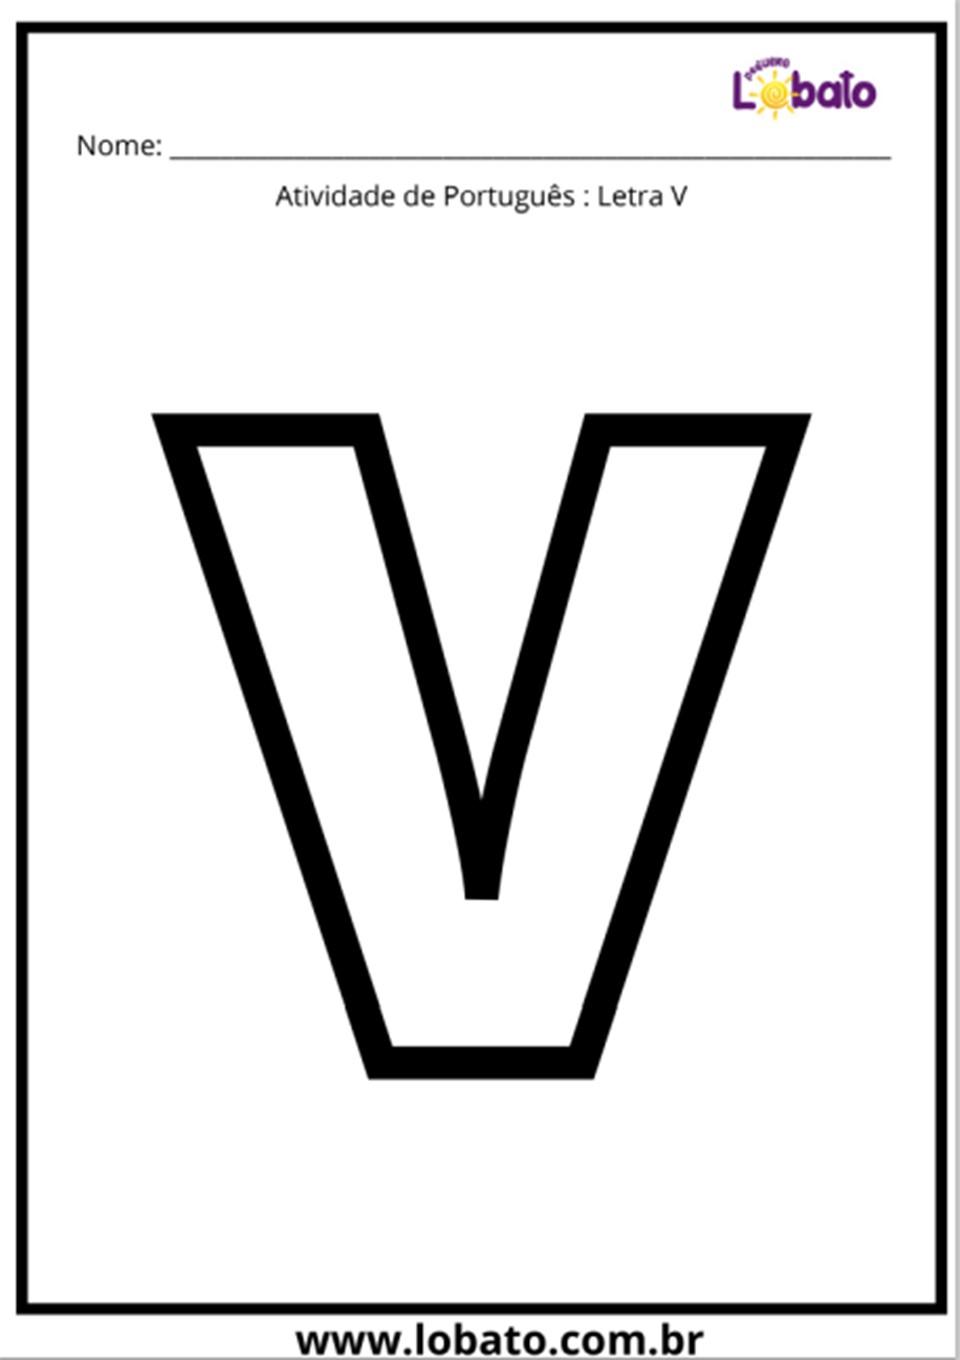 Atividade de português com a letra V para imprimir